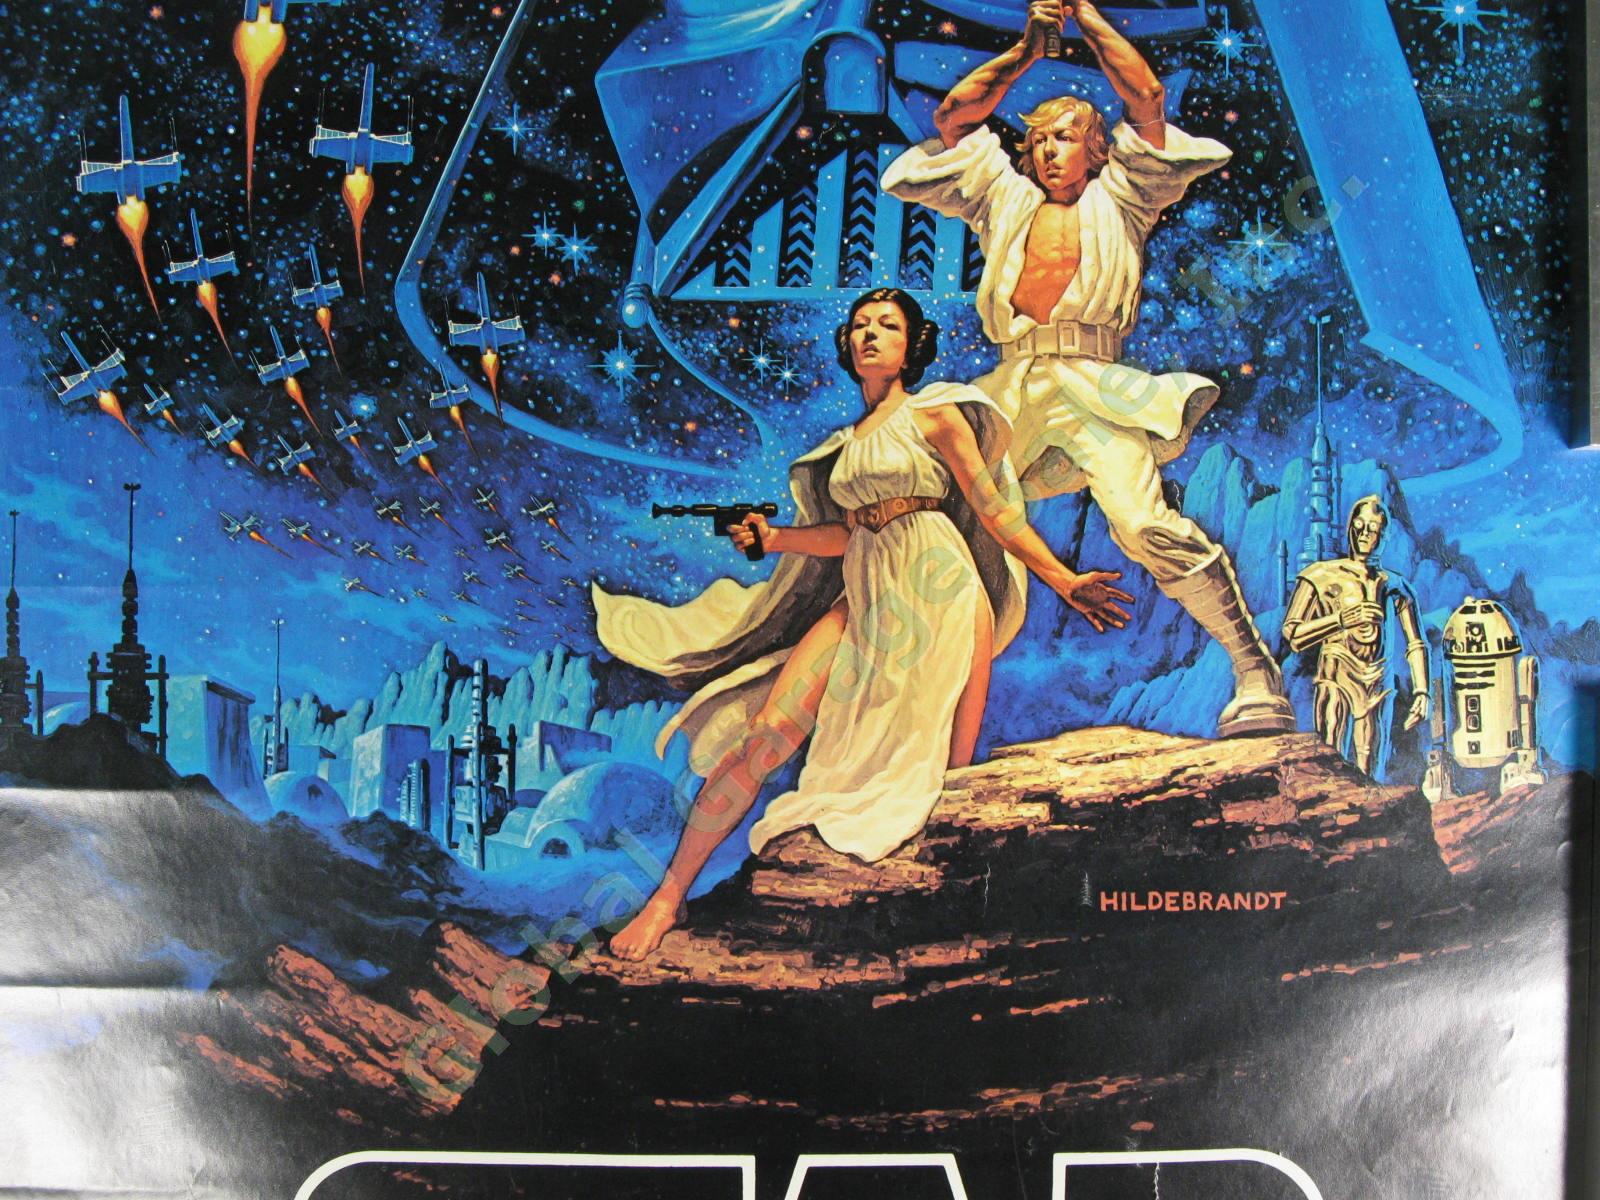 ORIGINAL 1977 Star Wars New Hope Hildebrandt 20th Century Fox Film Poster 28x20" 2